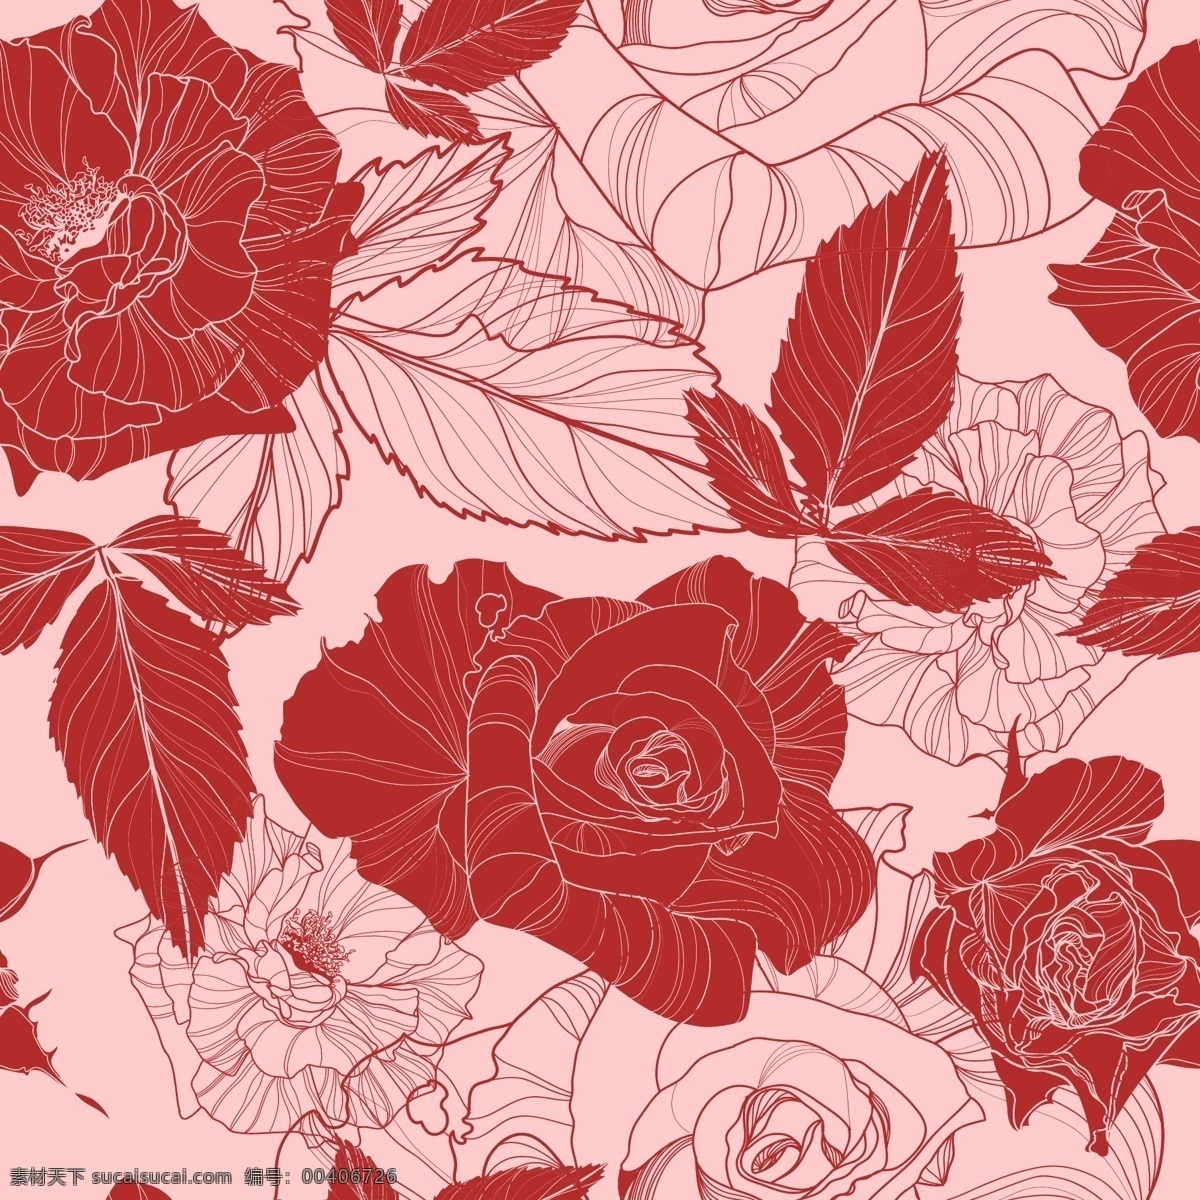 完整 线描 玫瑰花 矢量 花朵 艳丽 矢量素材 装饰图案 设计元素 玫瑰